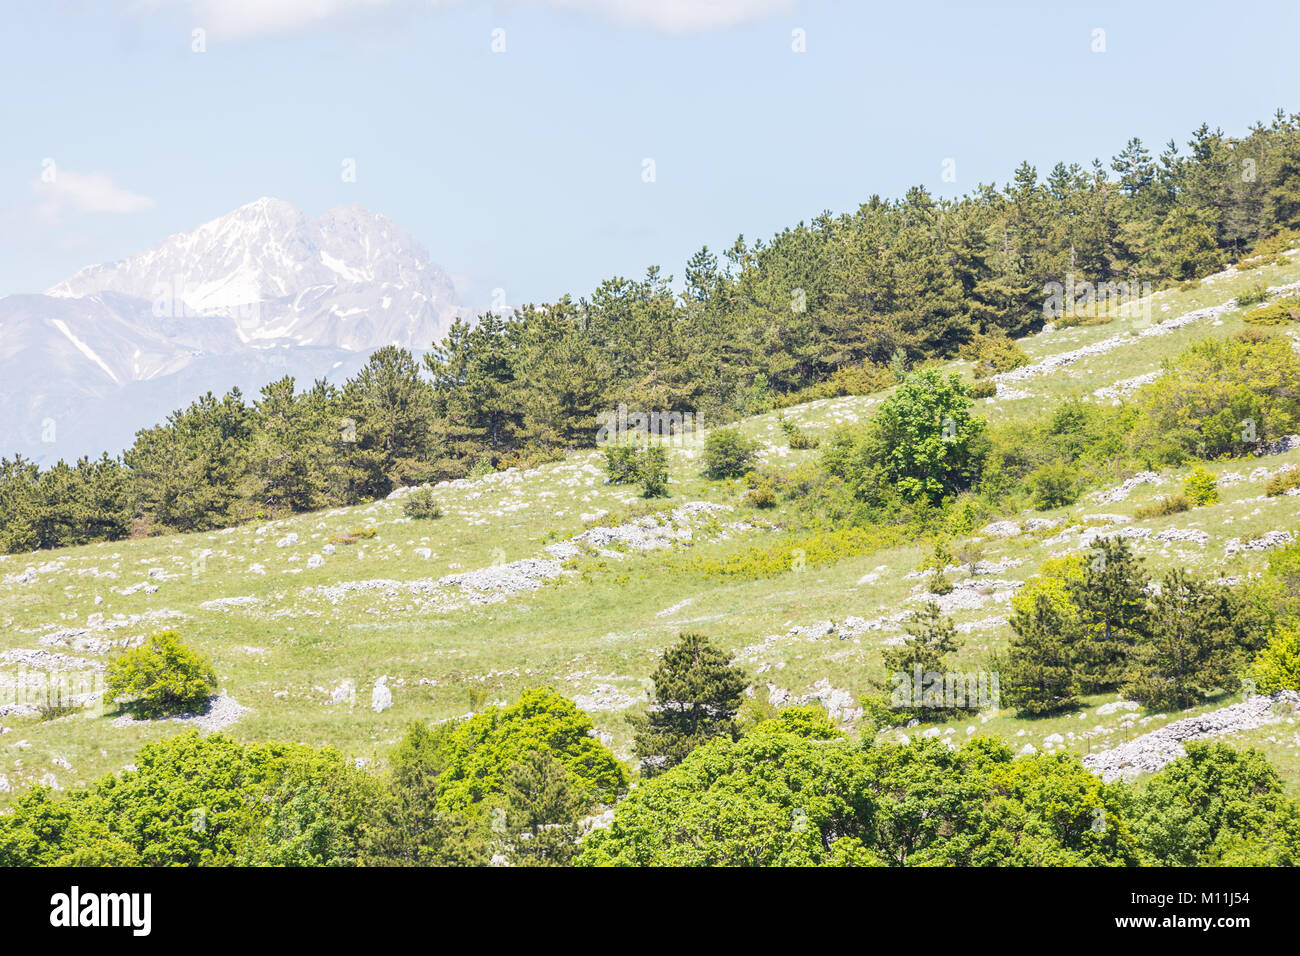 Beautiful landscape of green meadows and mountains. Rocca di Mezzo, province of L'Aquila, Abruzzo, Italy Stock Photo